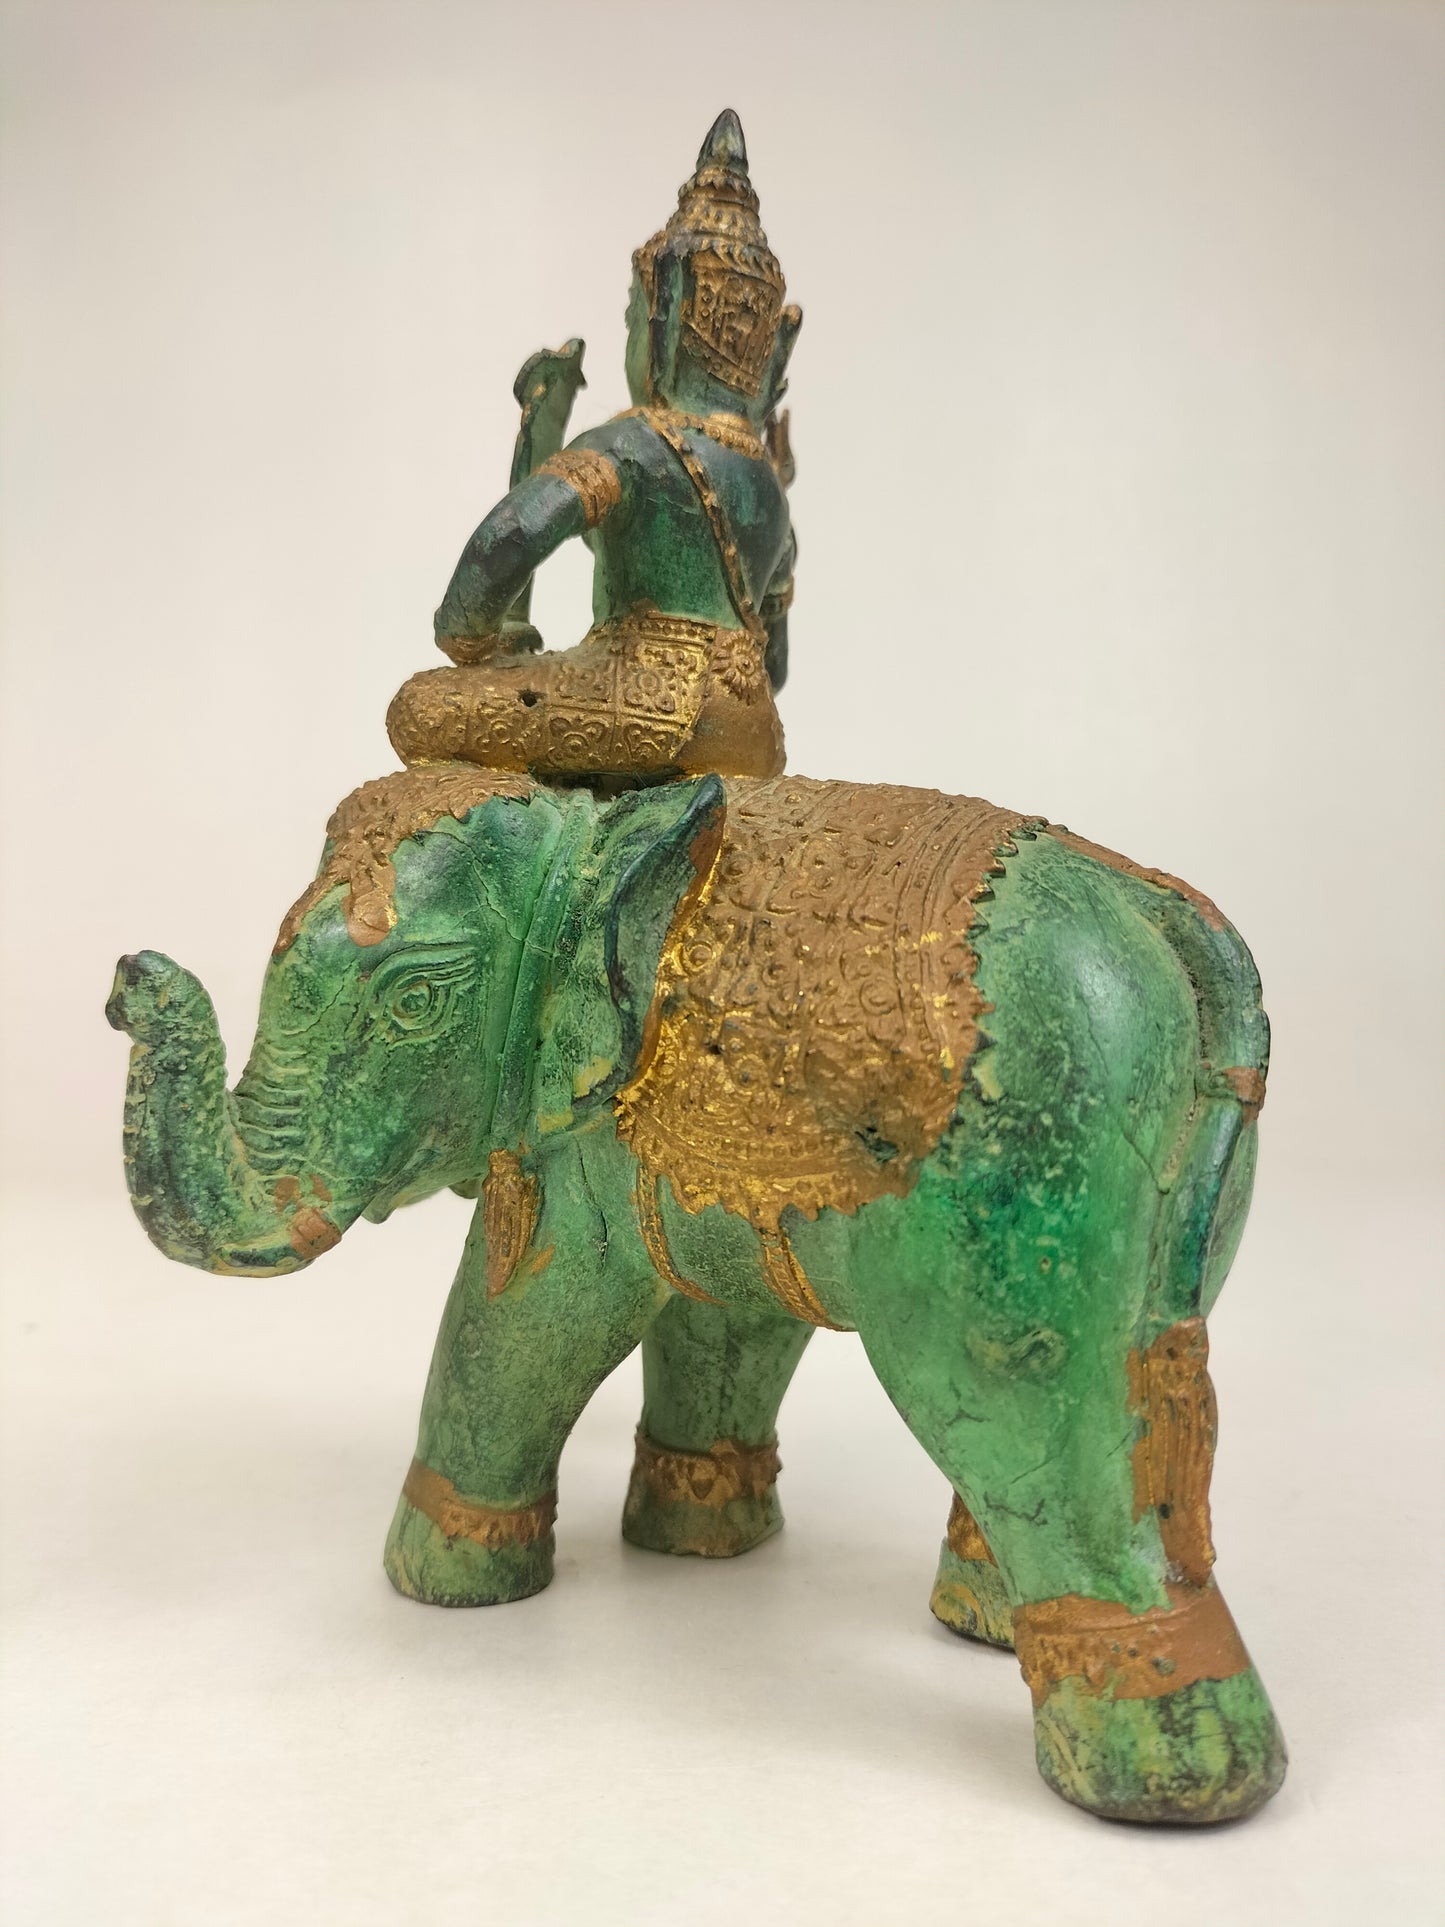 骑着大象的寺庙守护者镀金青铜雕像 // 泰国 - 20 世纪